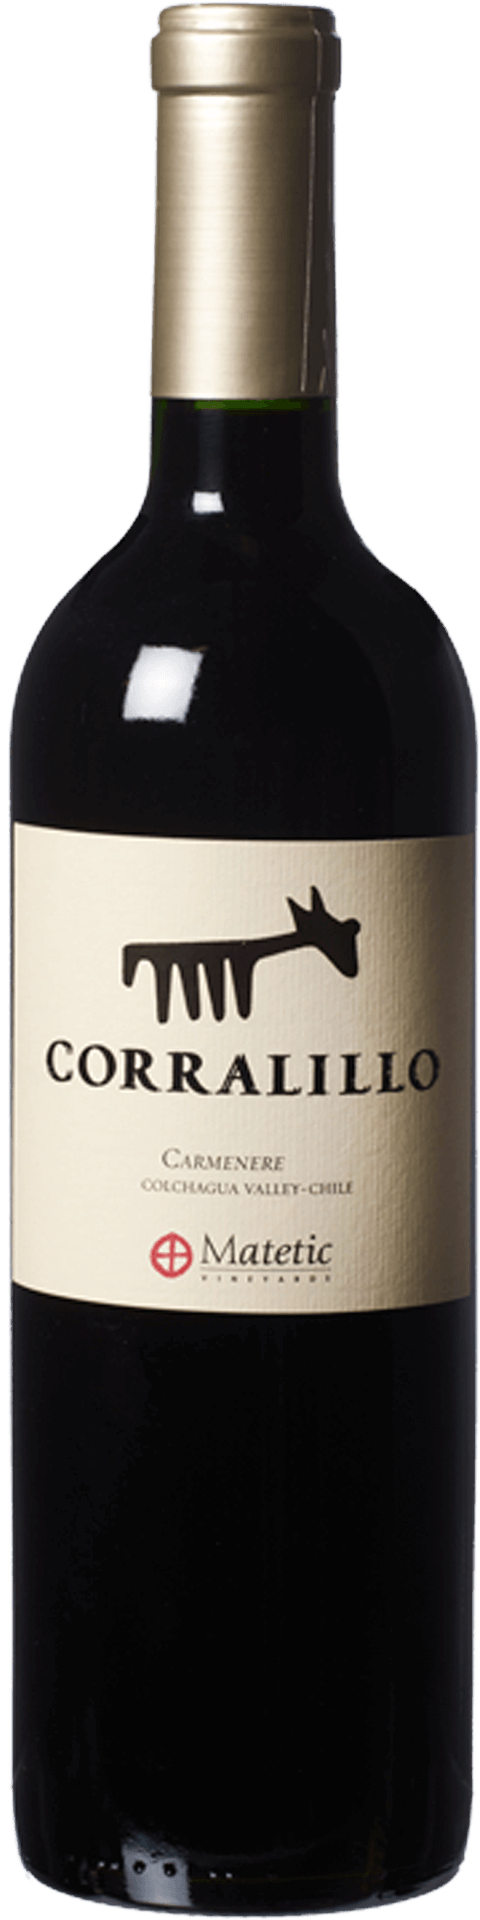 Bottle shot of 2016 Corralillo Carmenere